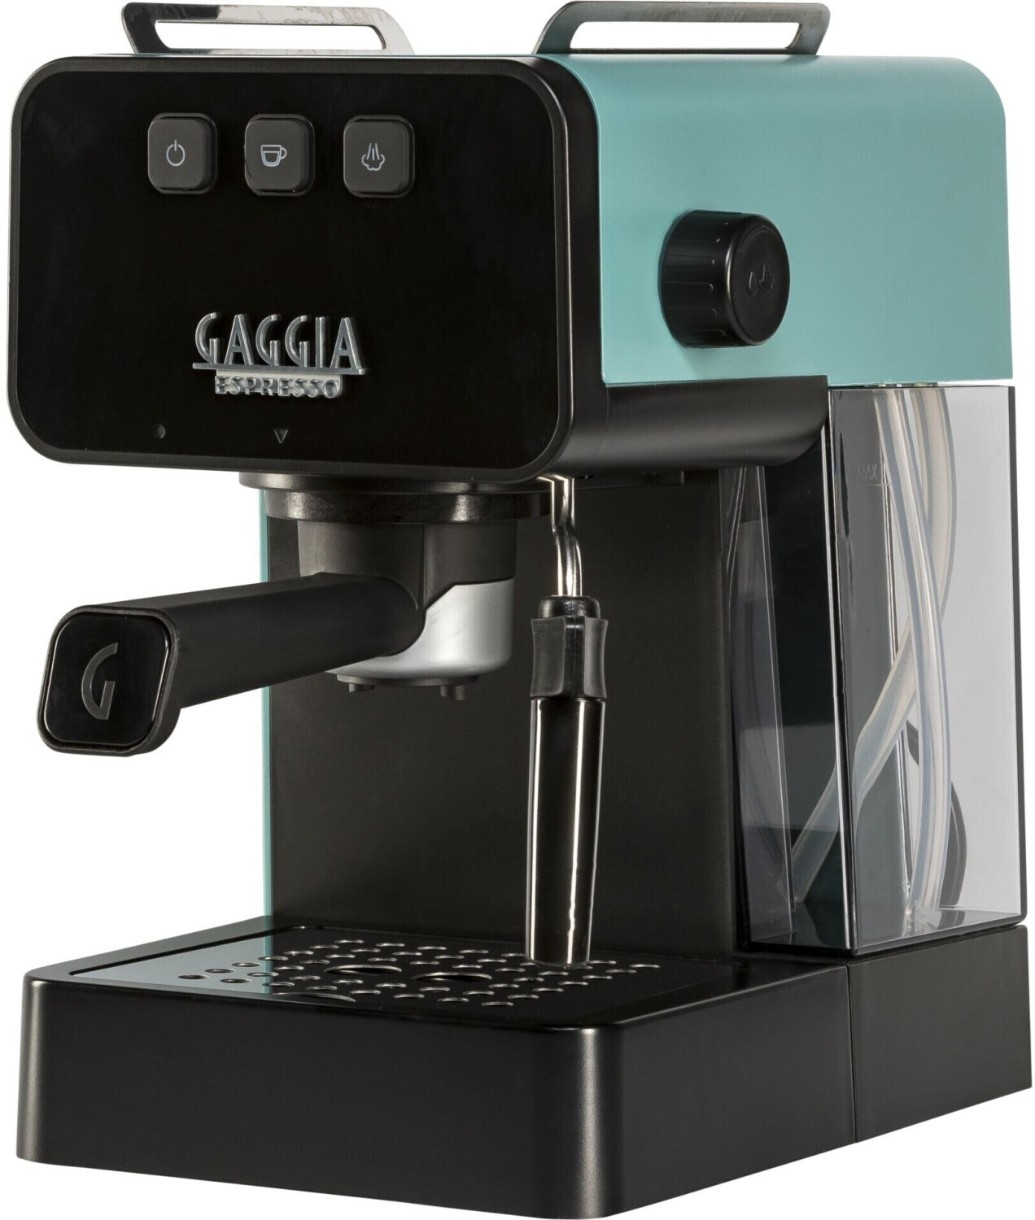 Электрокофеварка Gaggia Espresso Deluxe EG2111/66